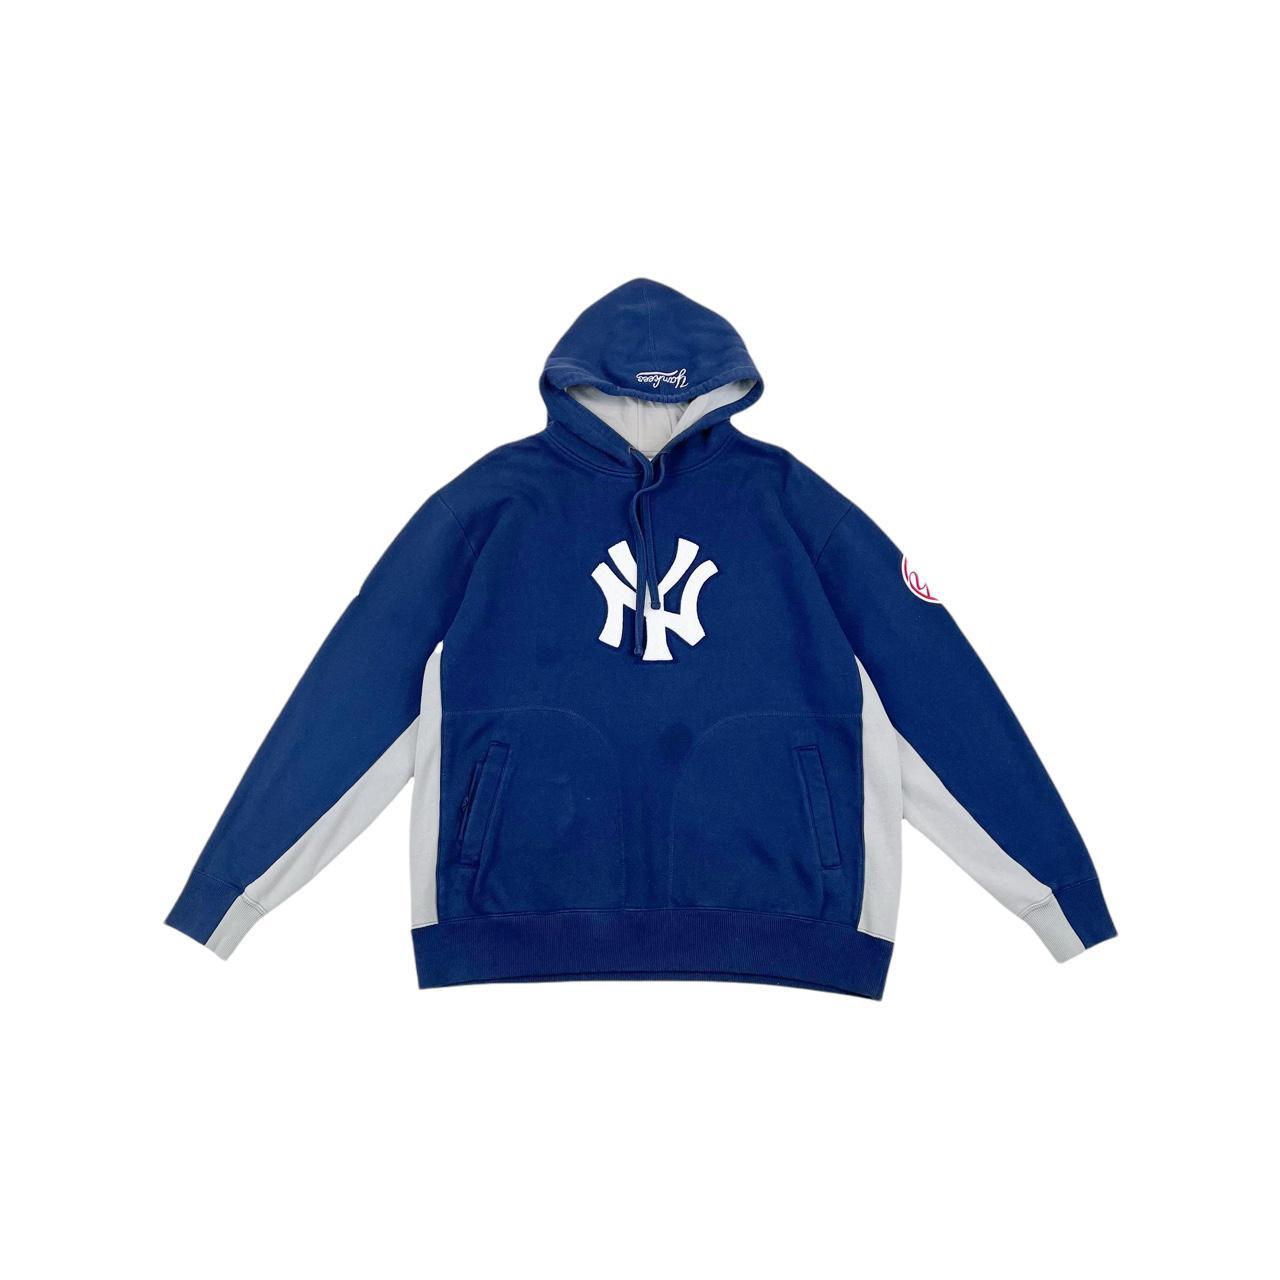 Vintage New York Yankees Sweatshirt New York - Depop